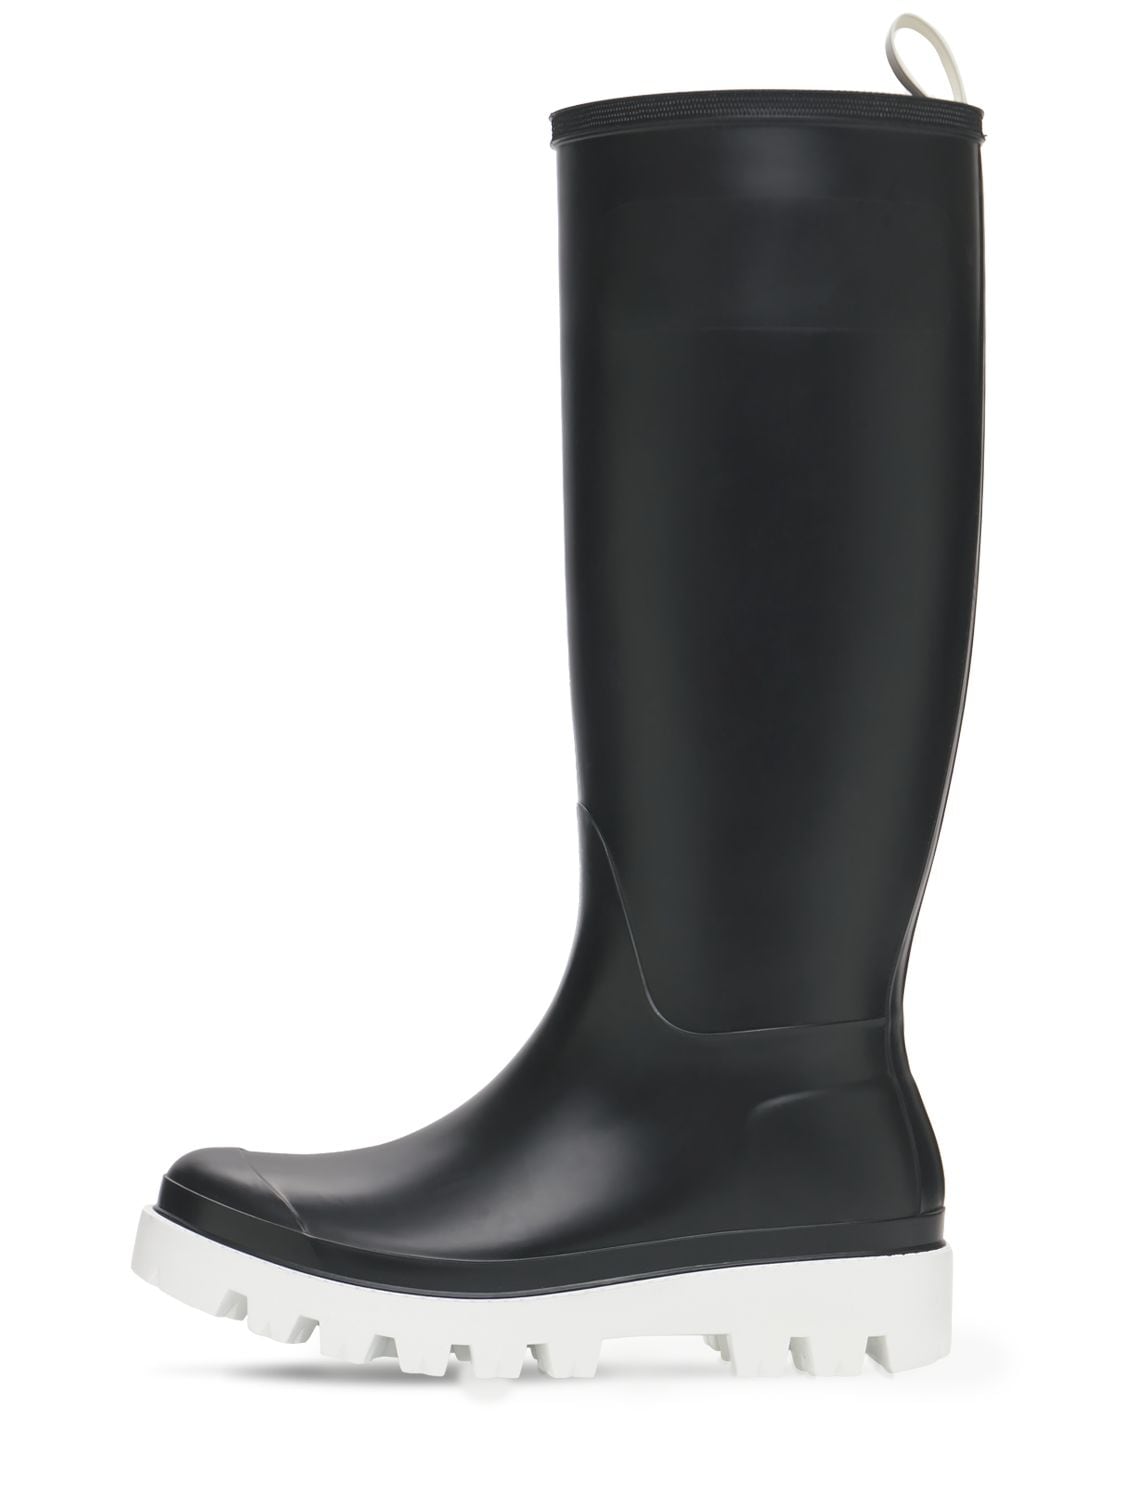 BootsGia Borghini in Pelle di colore Nero Donna Stivali da Stivali Gia Borghini 1% di sconto 